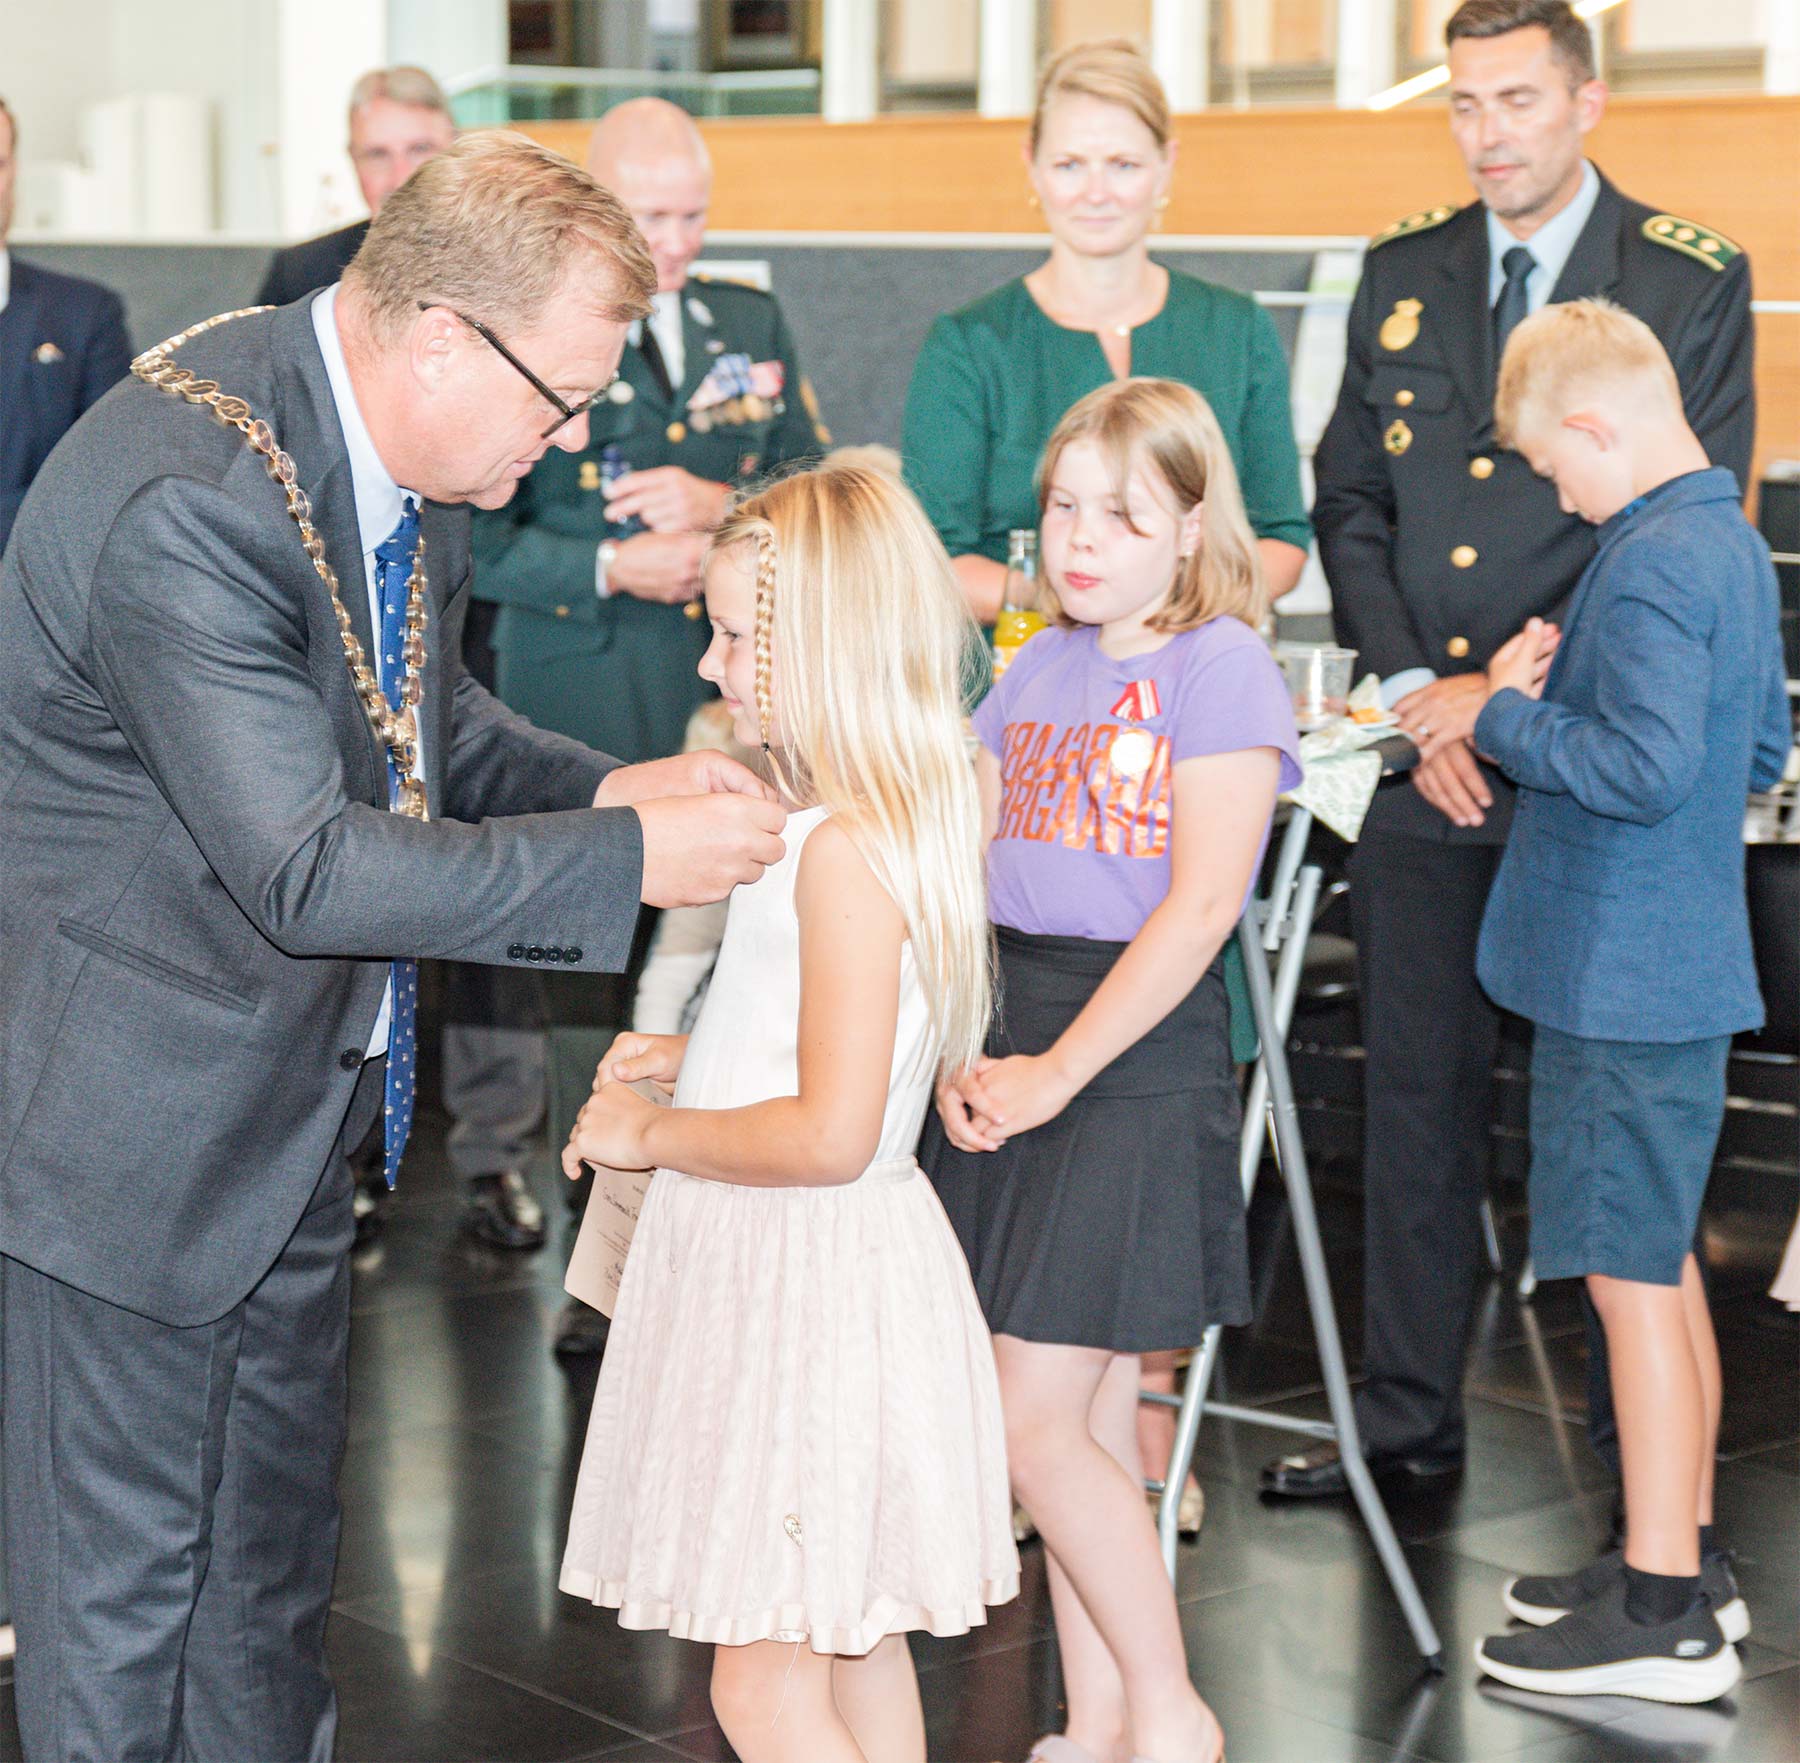 Borgmester Kenneth Gøtterup overrækker medaljer til ni børn. Foto: HAS.